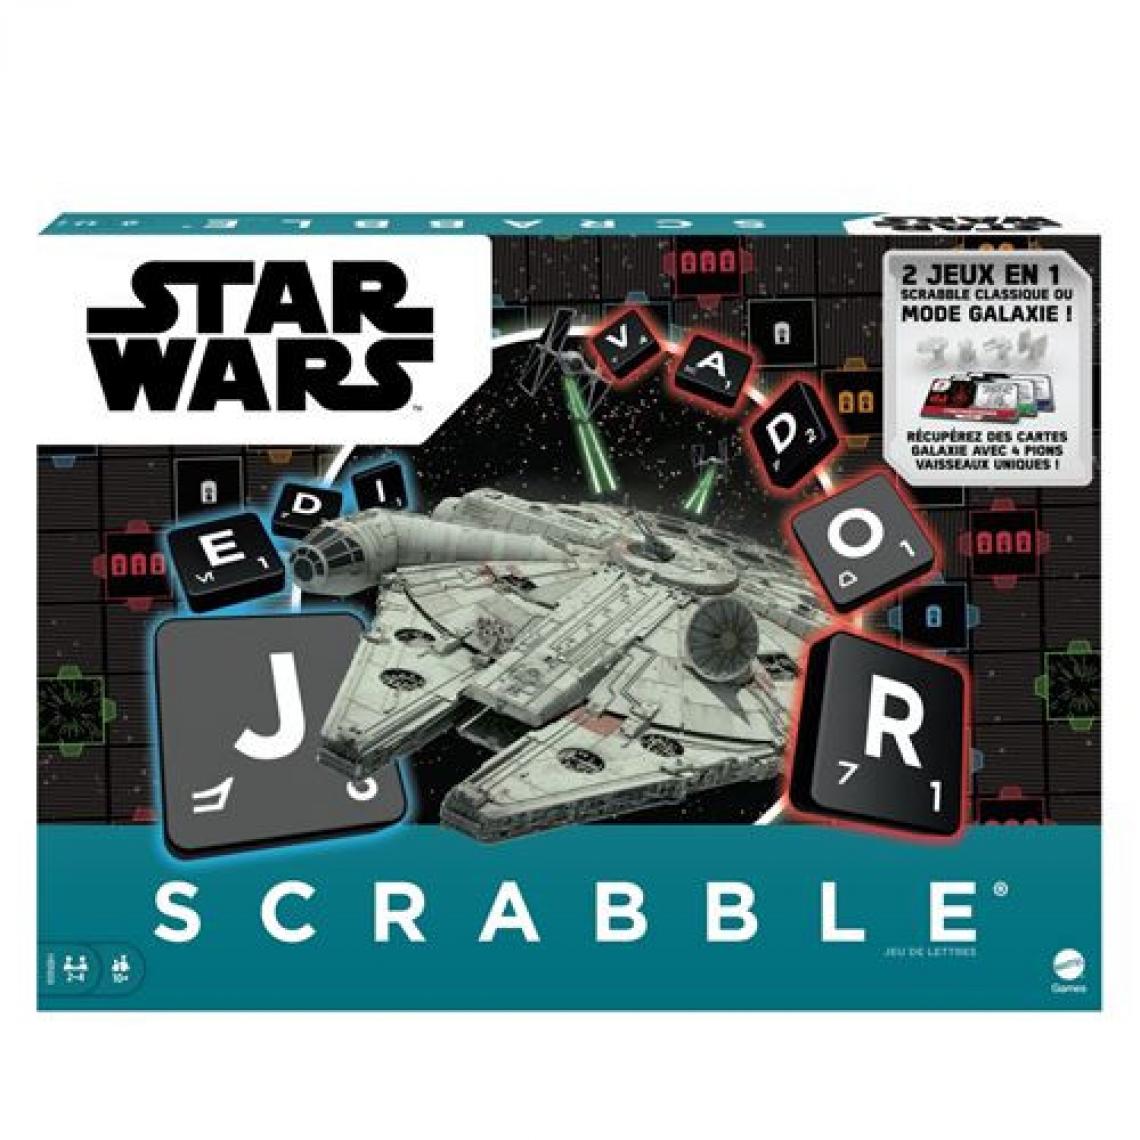 Star Wars - Jeu classique Star Wars Scrabble - Les grands classiques